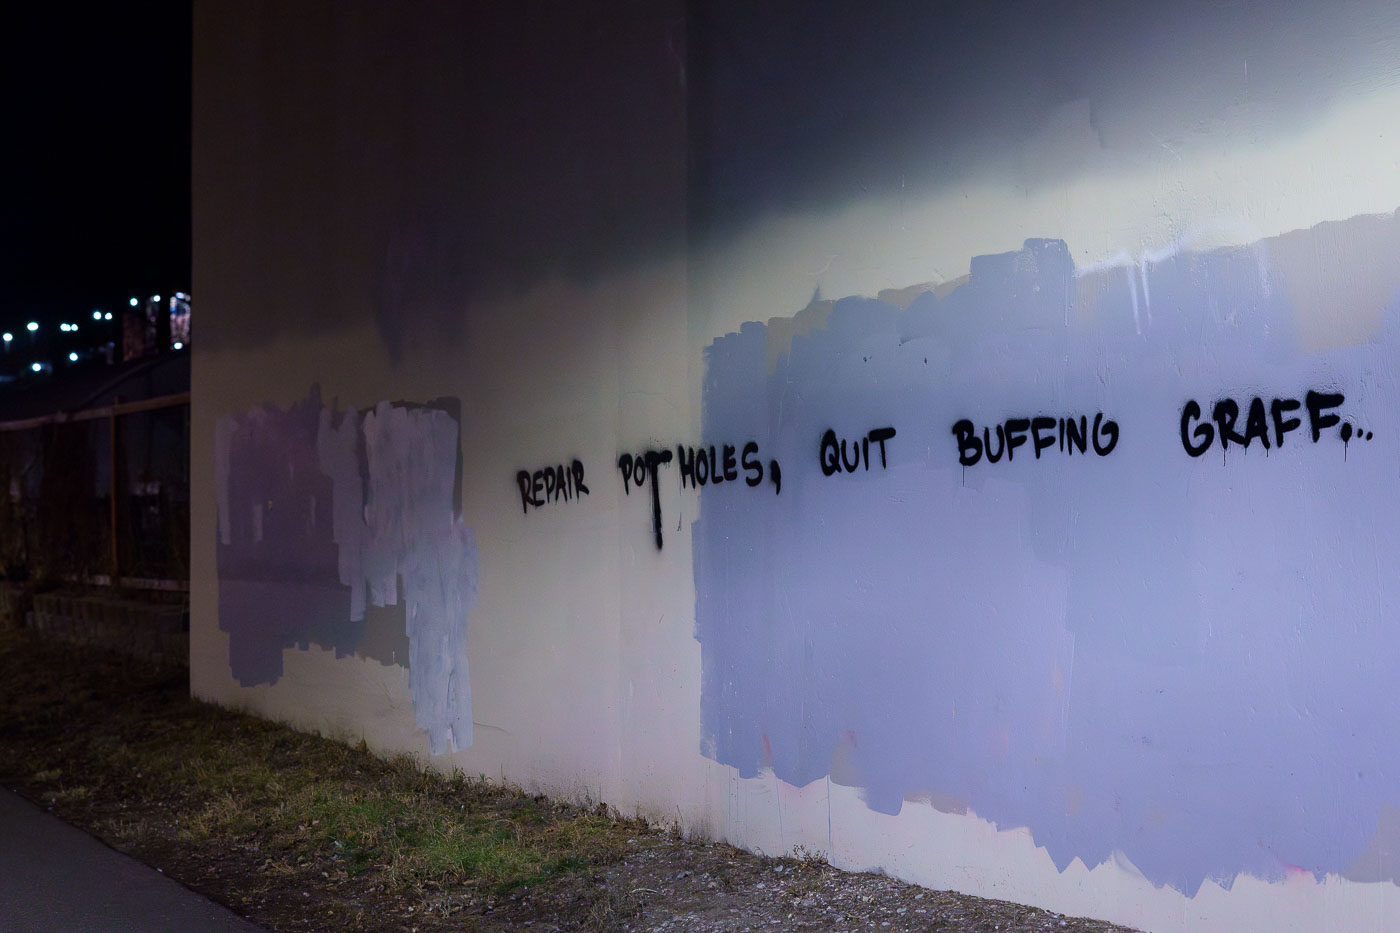 Repair Pot Holes Quit Buffing Graffiti